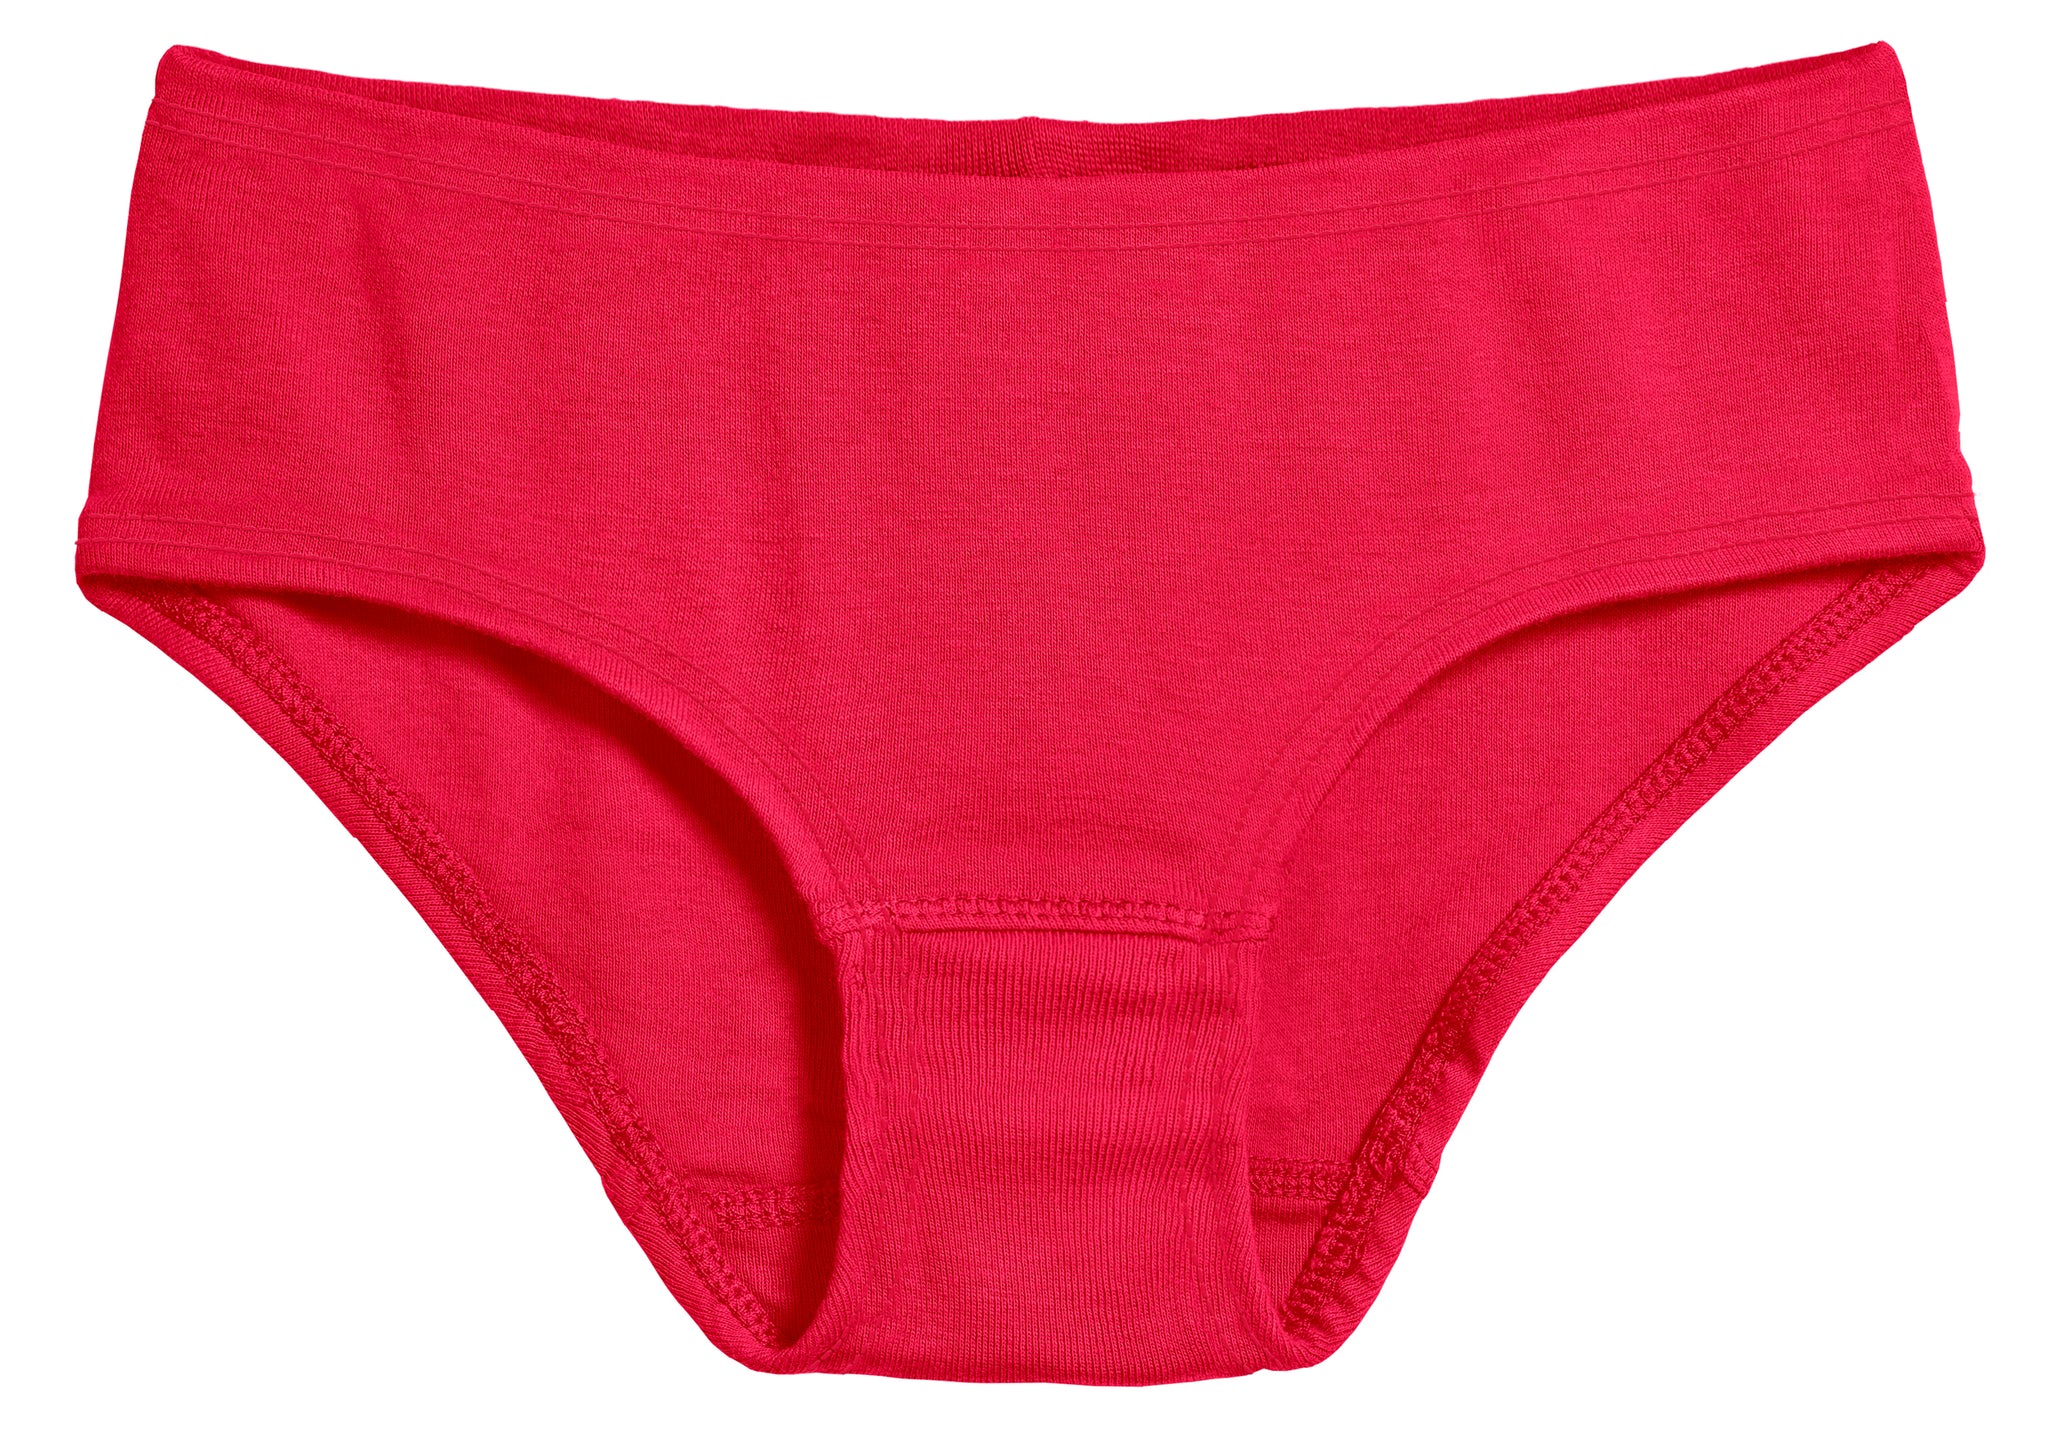 City Threads Girls' Certified Organic Cotton Briefs Underwear